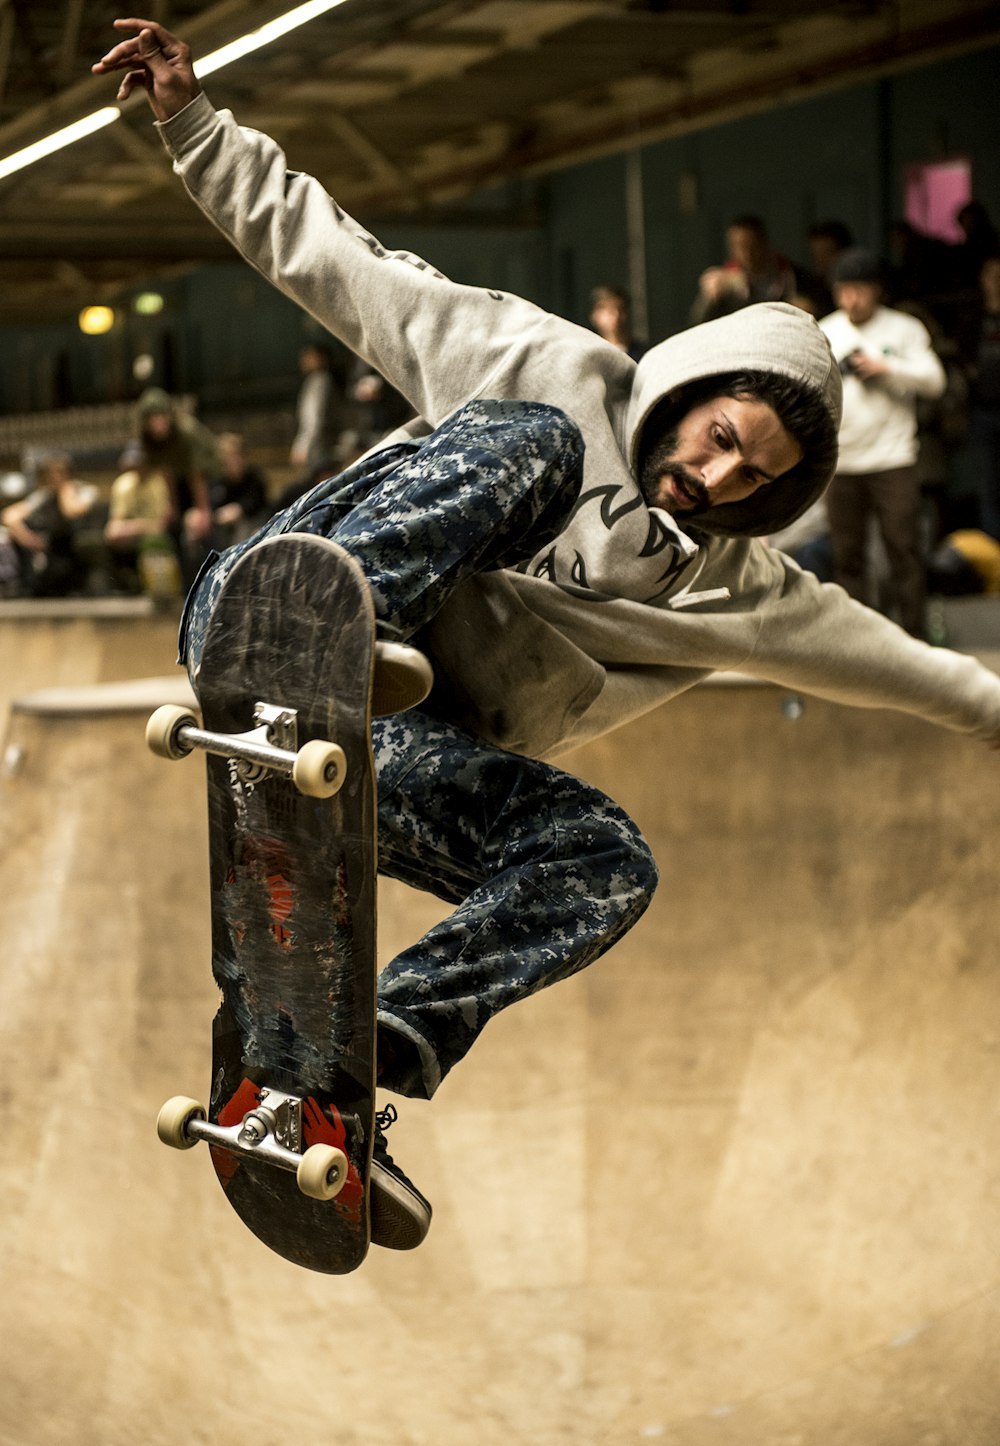 Skateboarder Pictures | Download Free Images on Unsplash